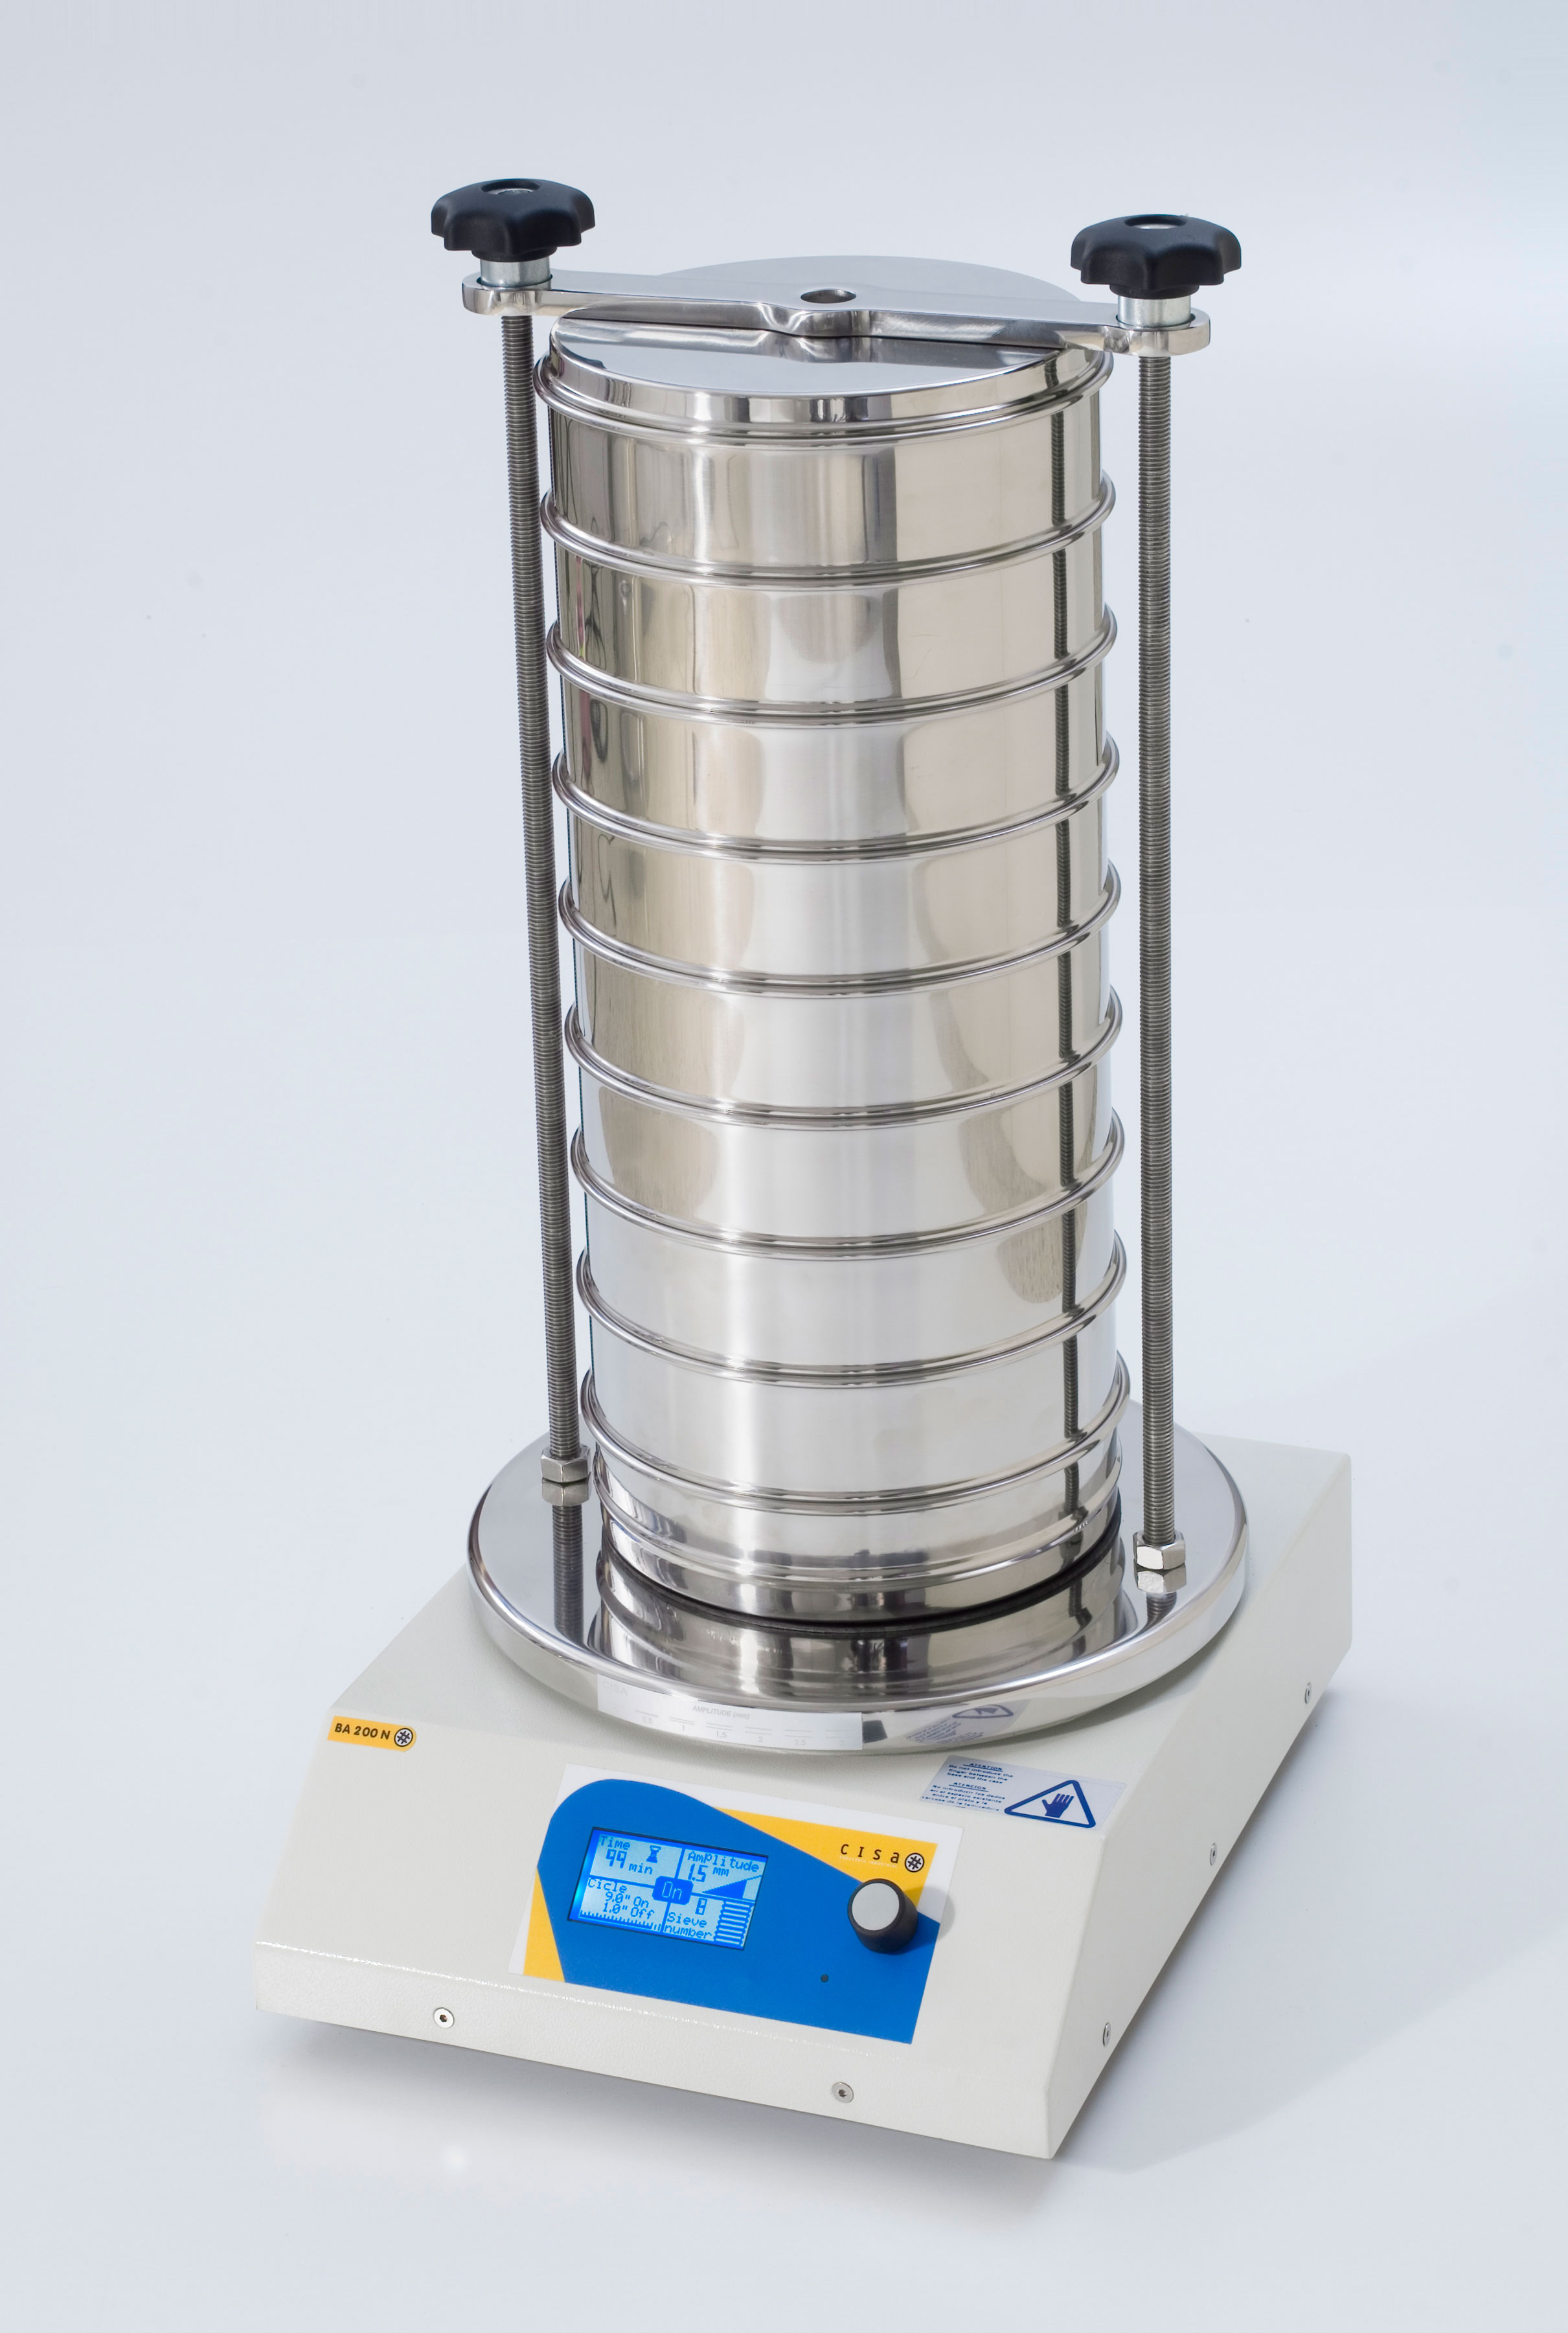 Tamizadora electromagnética digital BA 200N. CISA. Modelo: BA 200N. Dim. AnxAlxPr (mm): 400x95x310. Peso (kg): 27